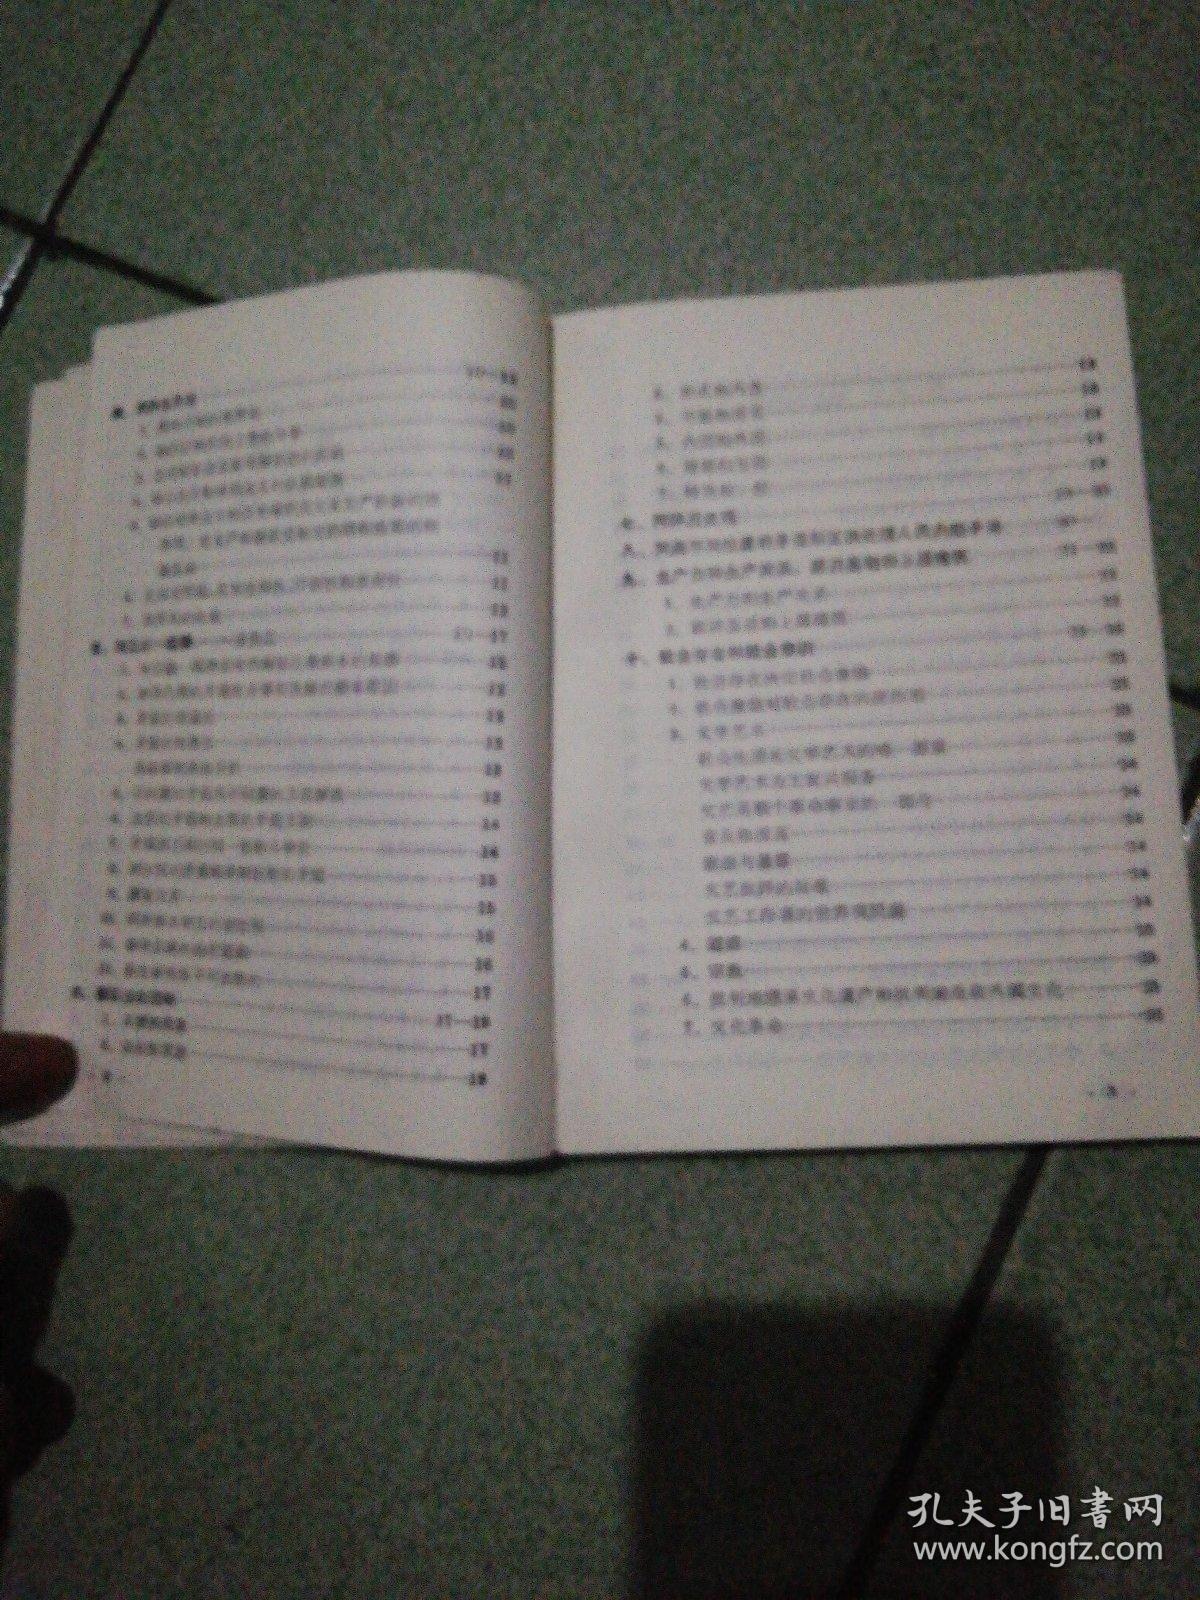 毛泽东选集索引一至四卷横竖对照红代会中国人民大学三红编1967年北京无护封